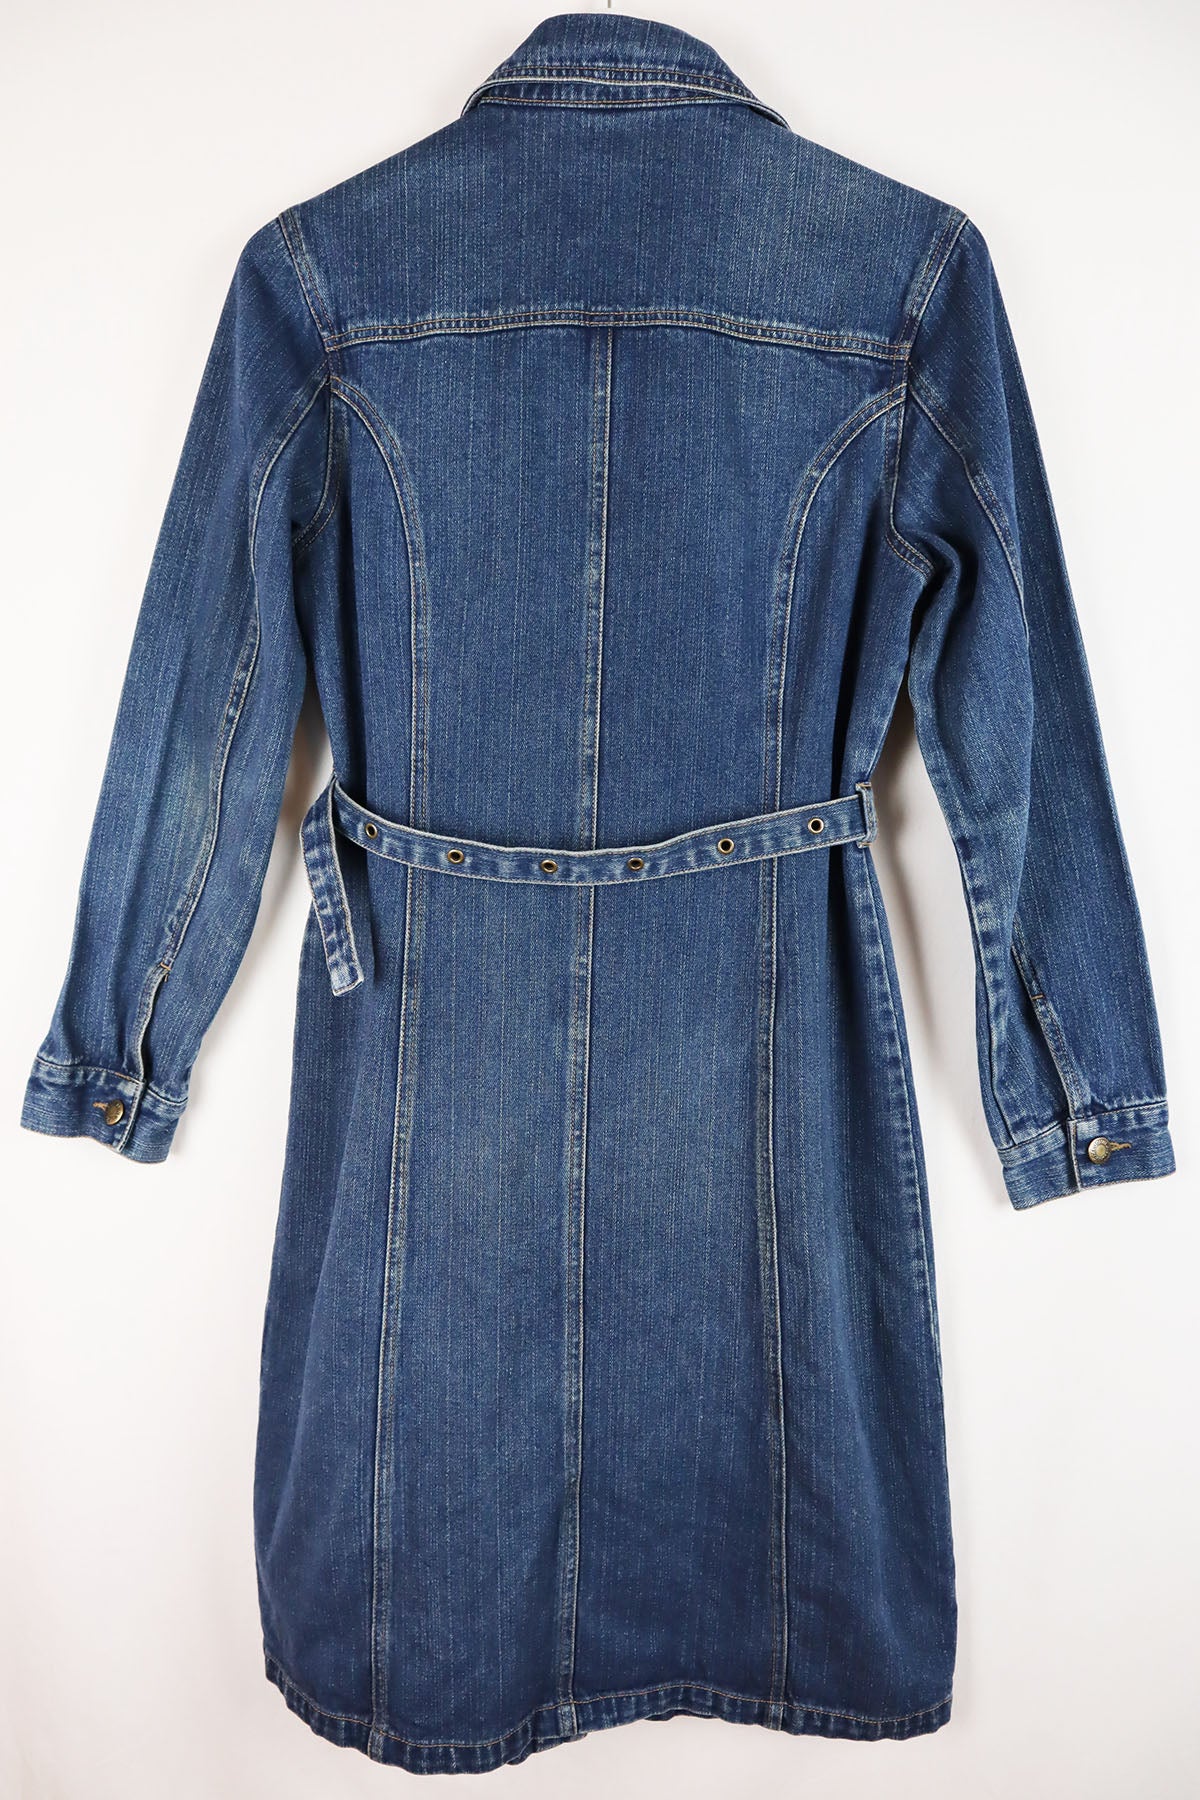 Jeanskleid Vintage ( Gr. M )